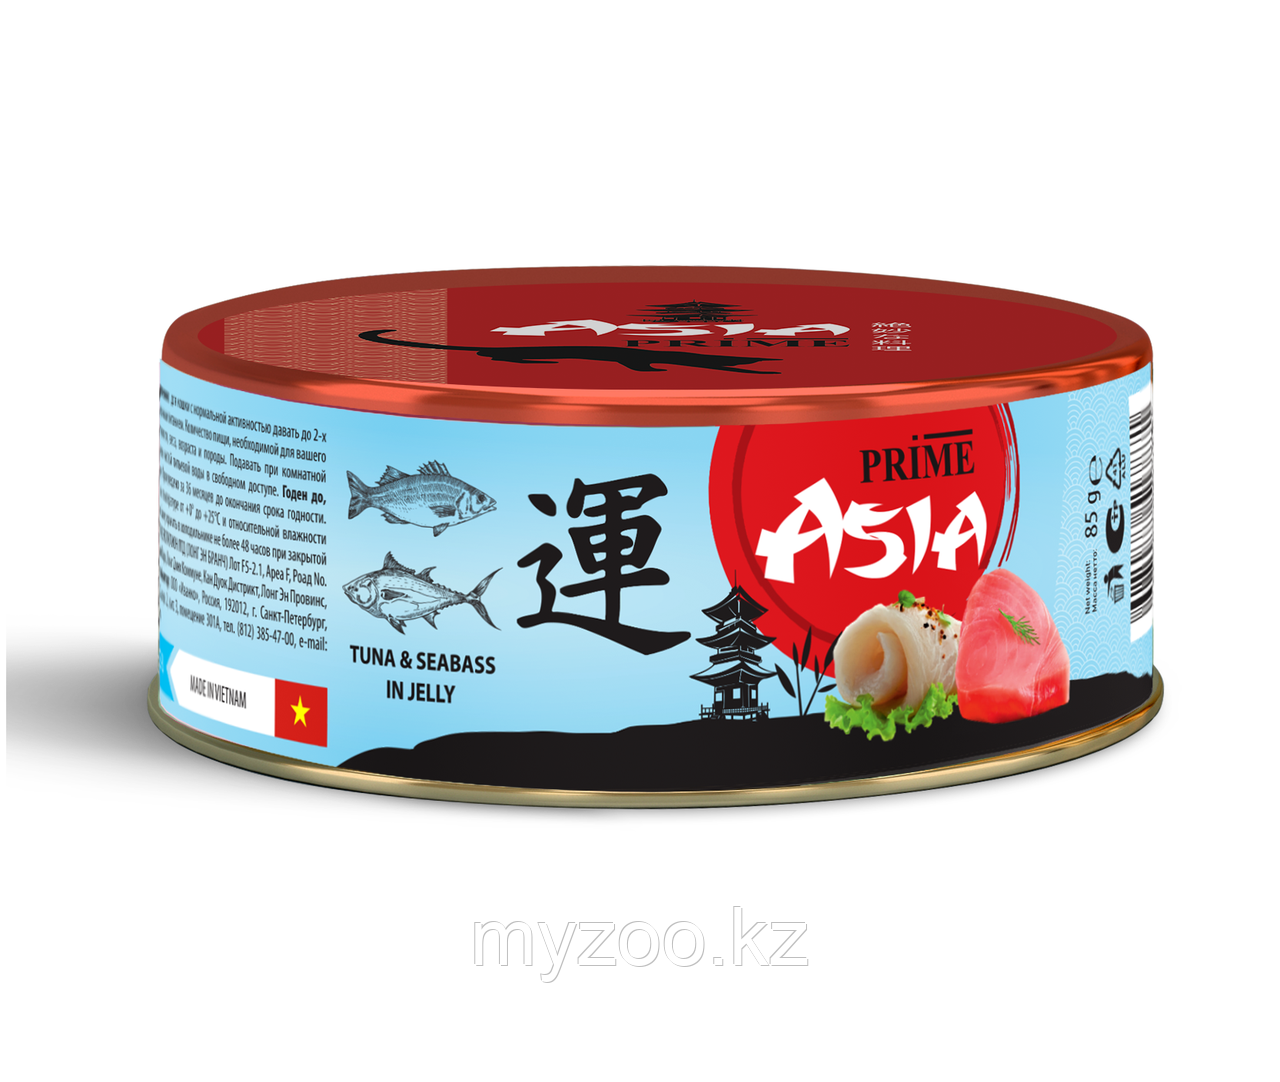 Prime Asia консервы для кошек тунец с сибасом в желе, 85гр